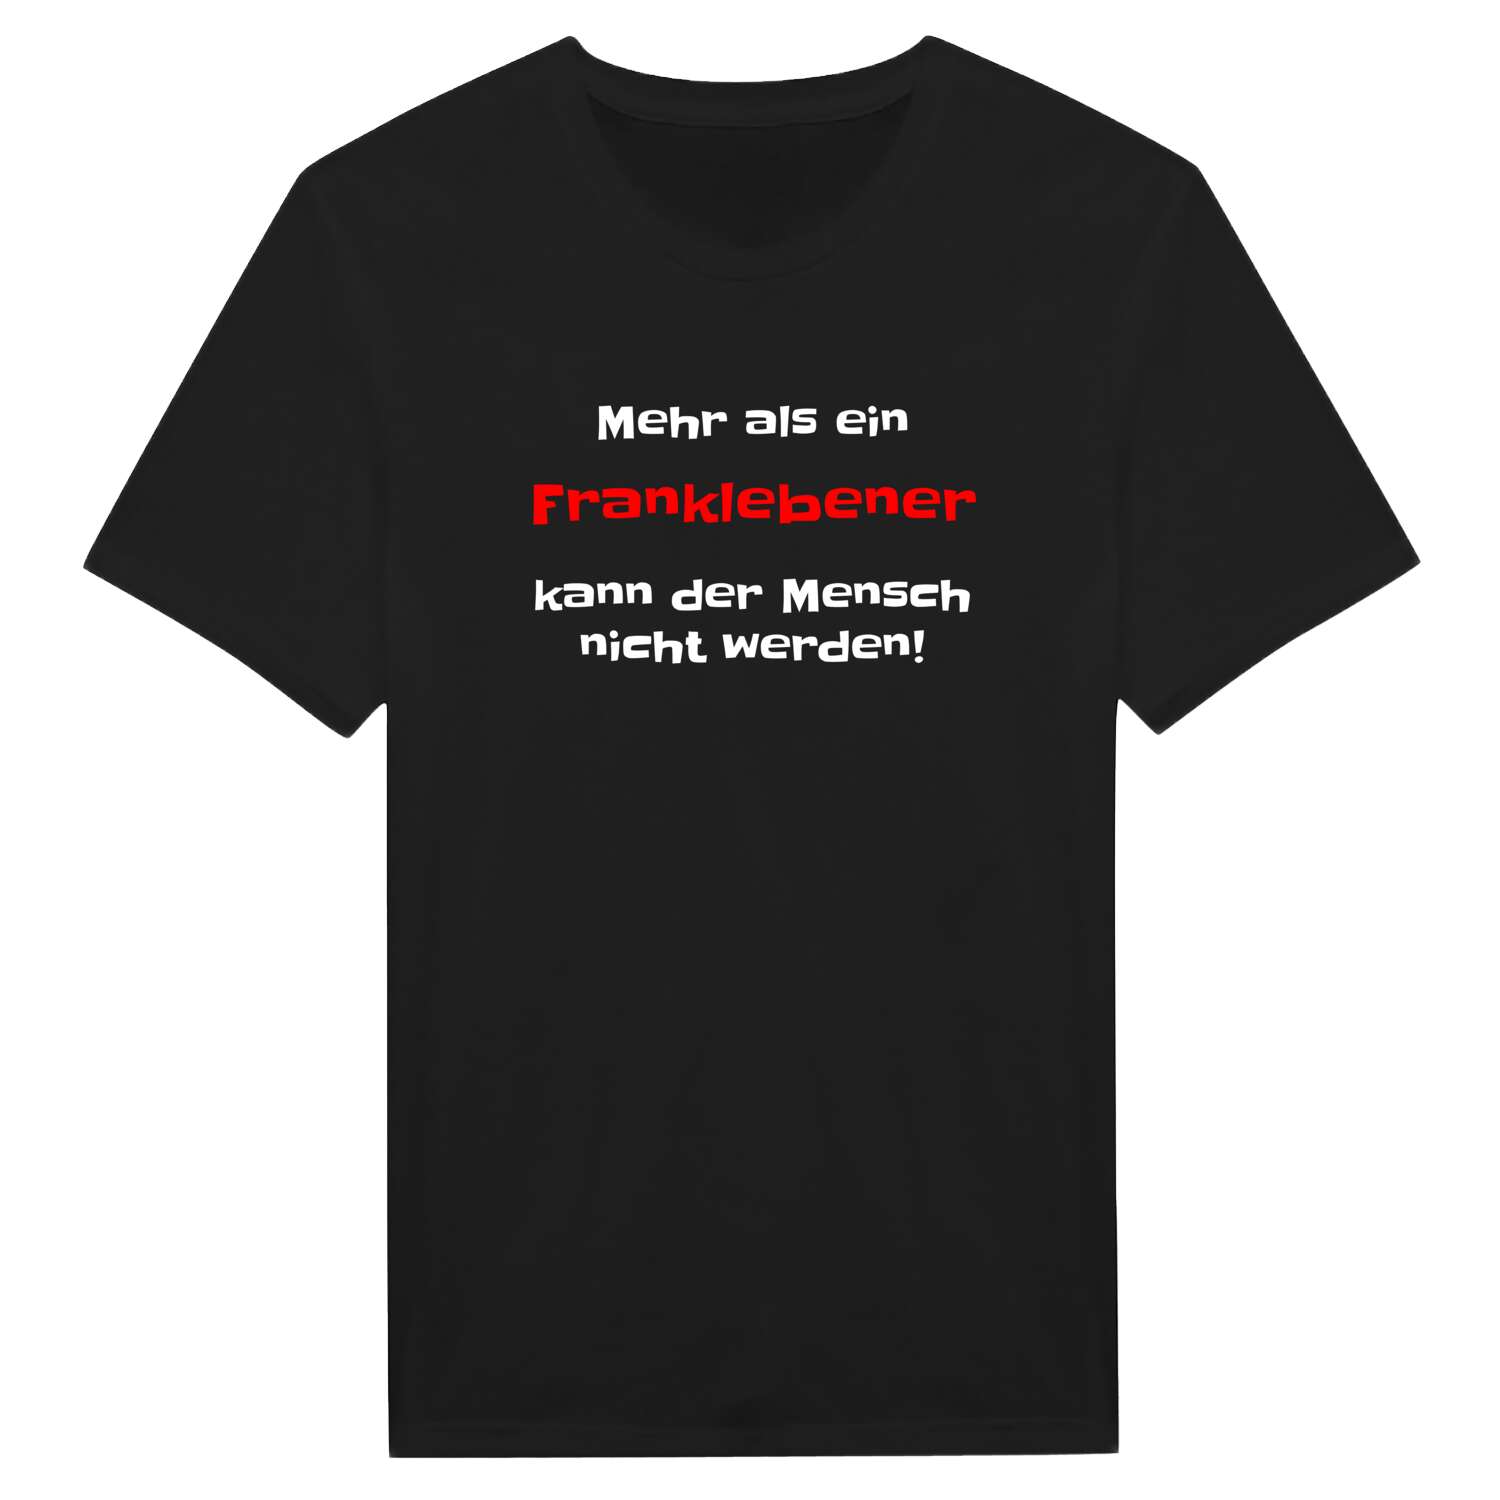 Frankleben T-Shirt »Mehr als ein«